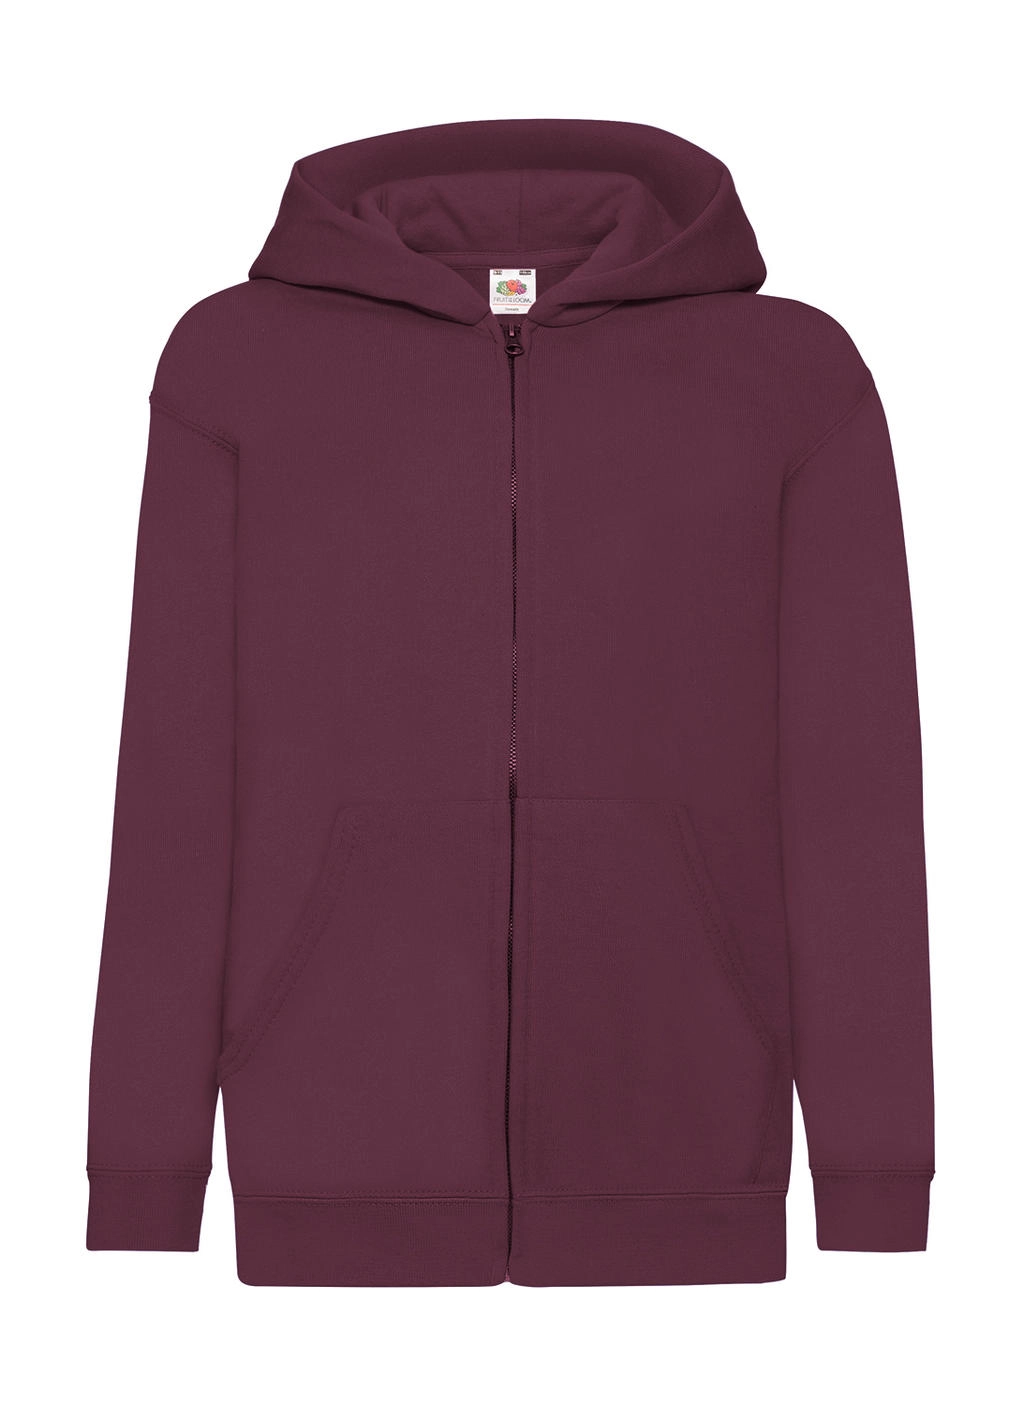 Kids` Classic Hooded Sweat Jacket zum Besticken und Bedrucken in der Farbe Burgundy mit Ihren Logo, Schriftzug oder Motiv.